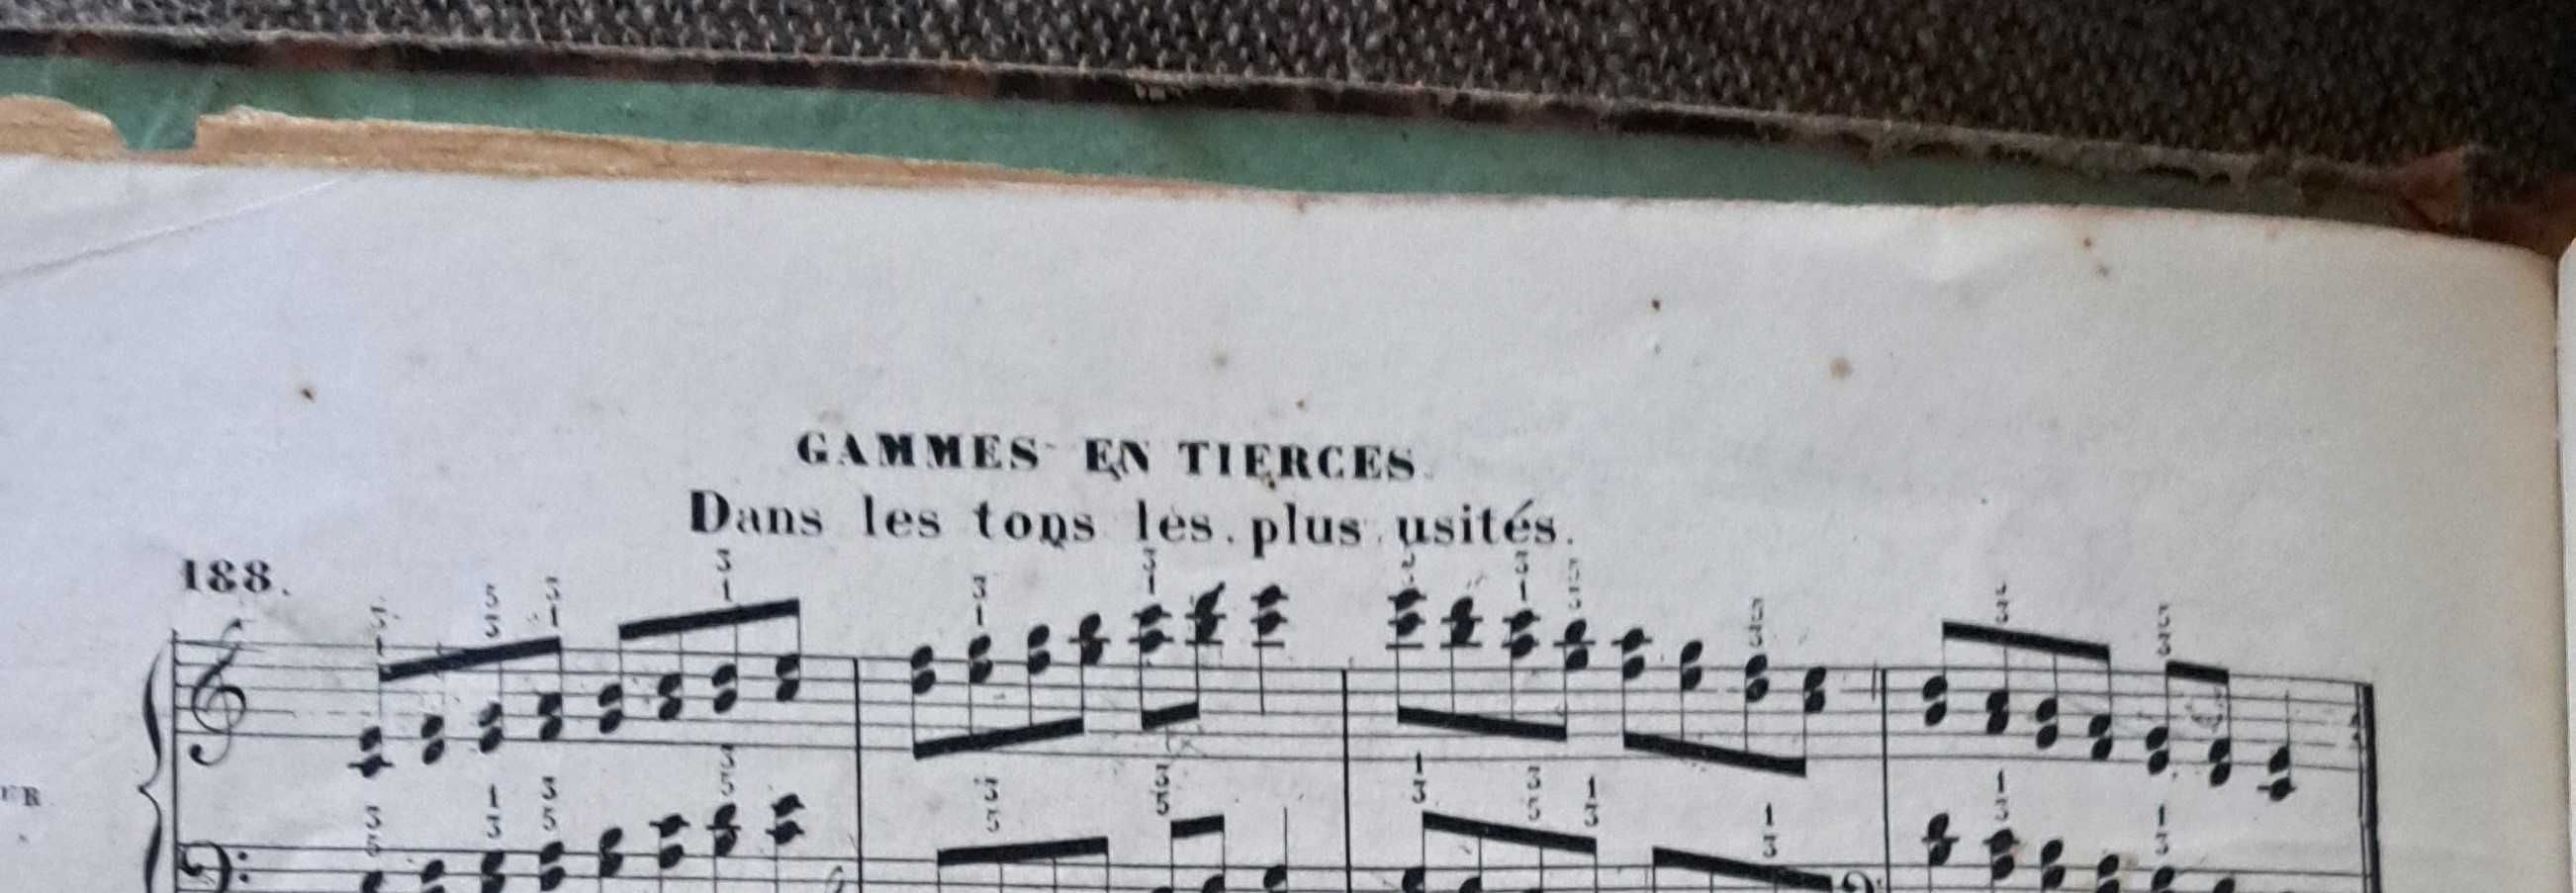 Livro antigo de exercícios de música para piano